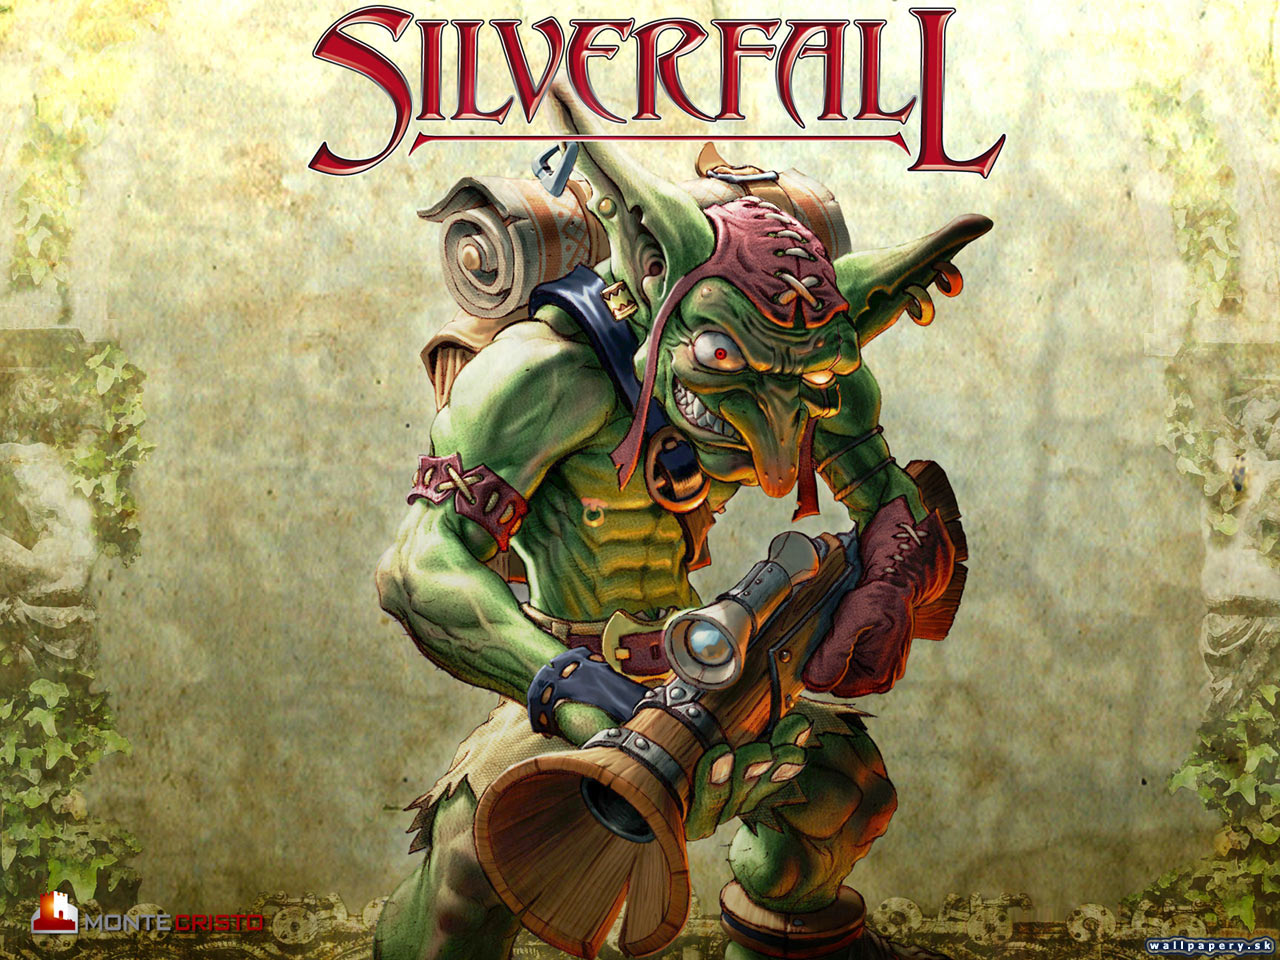 Silverfall - wallpaper 10